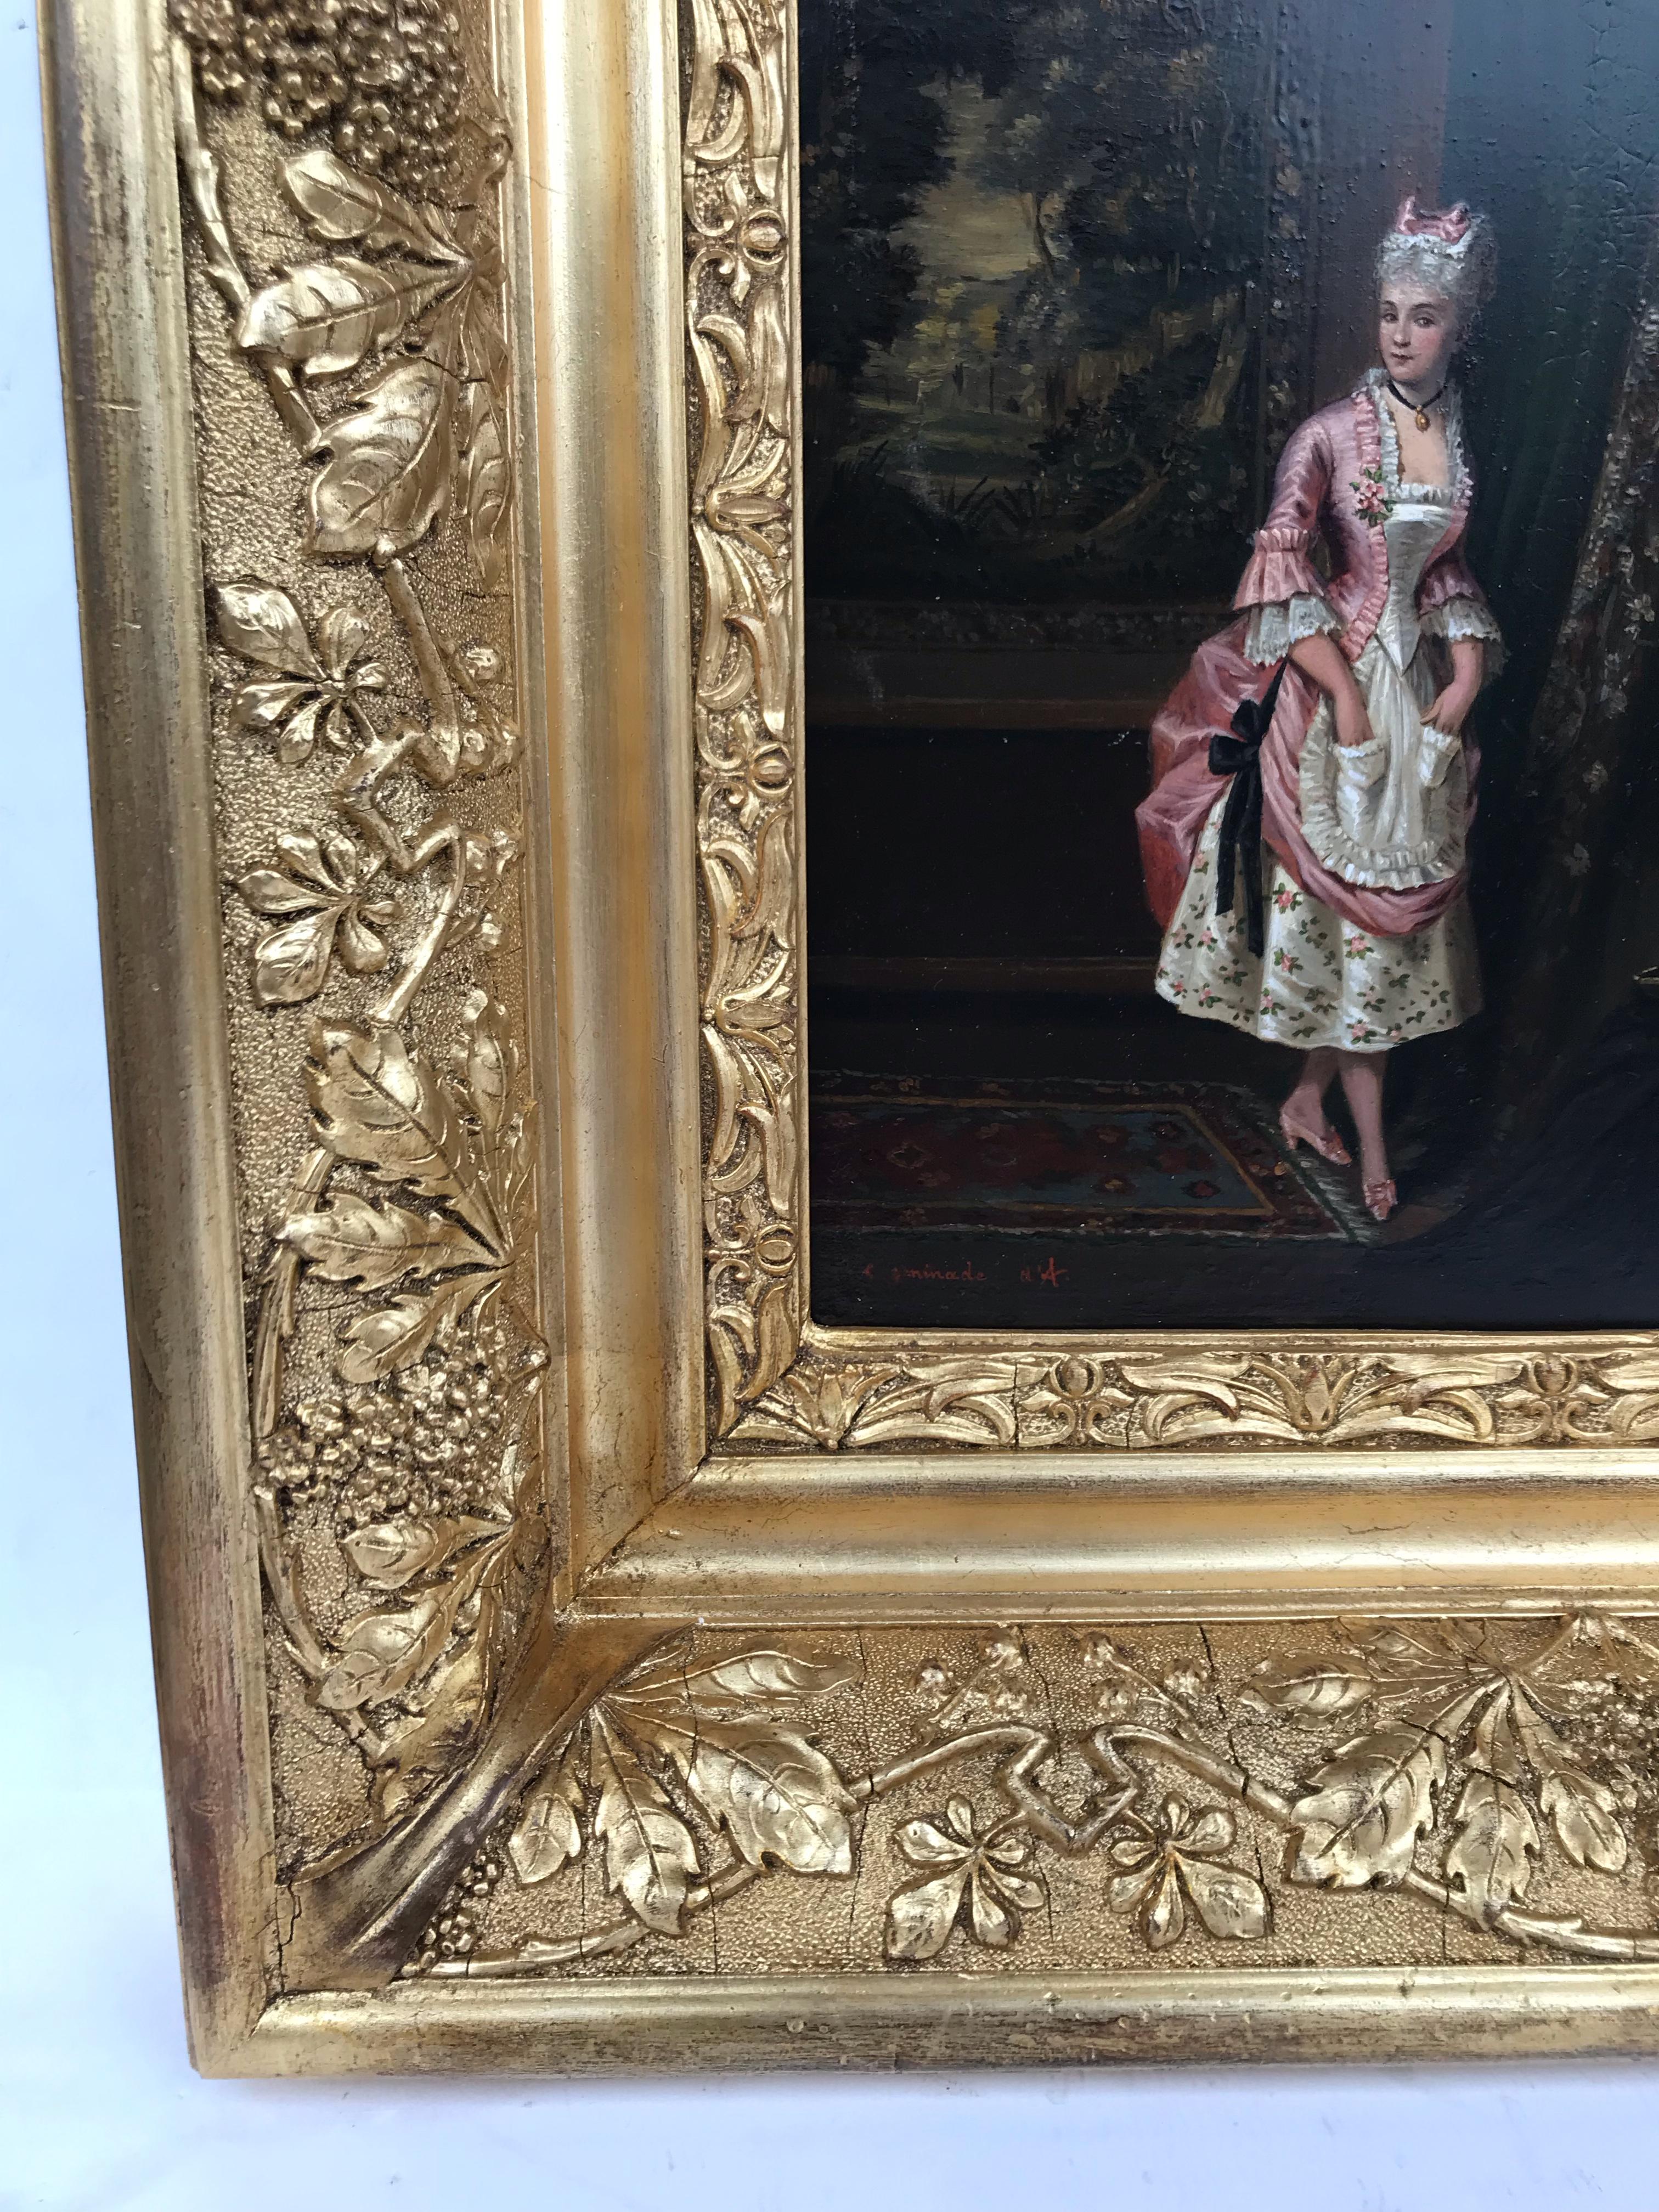 Alexandre François CAMINADE (1789-1862)
Portrait d'une femme
Huile sur bois signée en bas à droite
Cadre ancien doré avec des feuilles
Taille du bois : 22 X 15 cm
Taille du cadre : 40 X 30 cm

Alexandre-François Caminade, né à Paris le 14 décembre